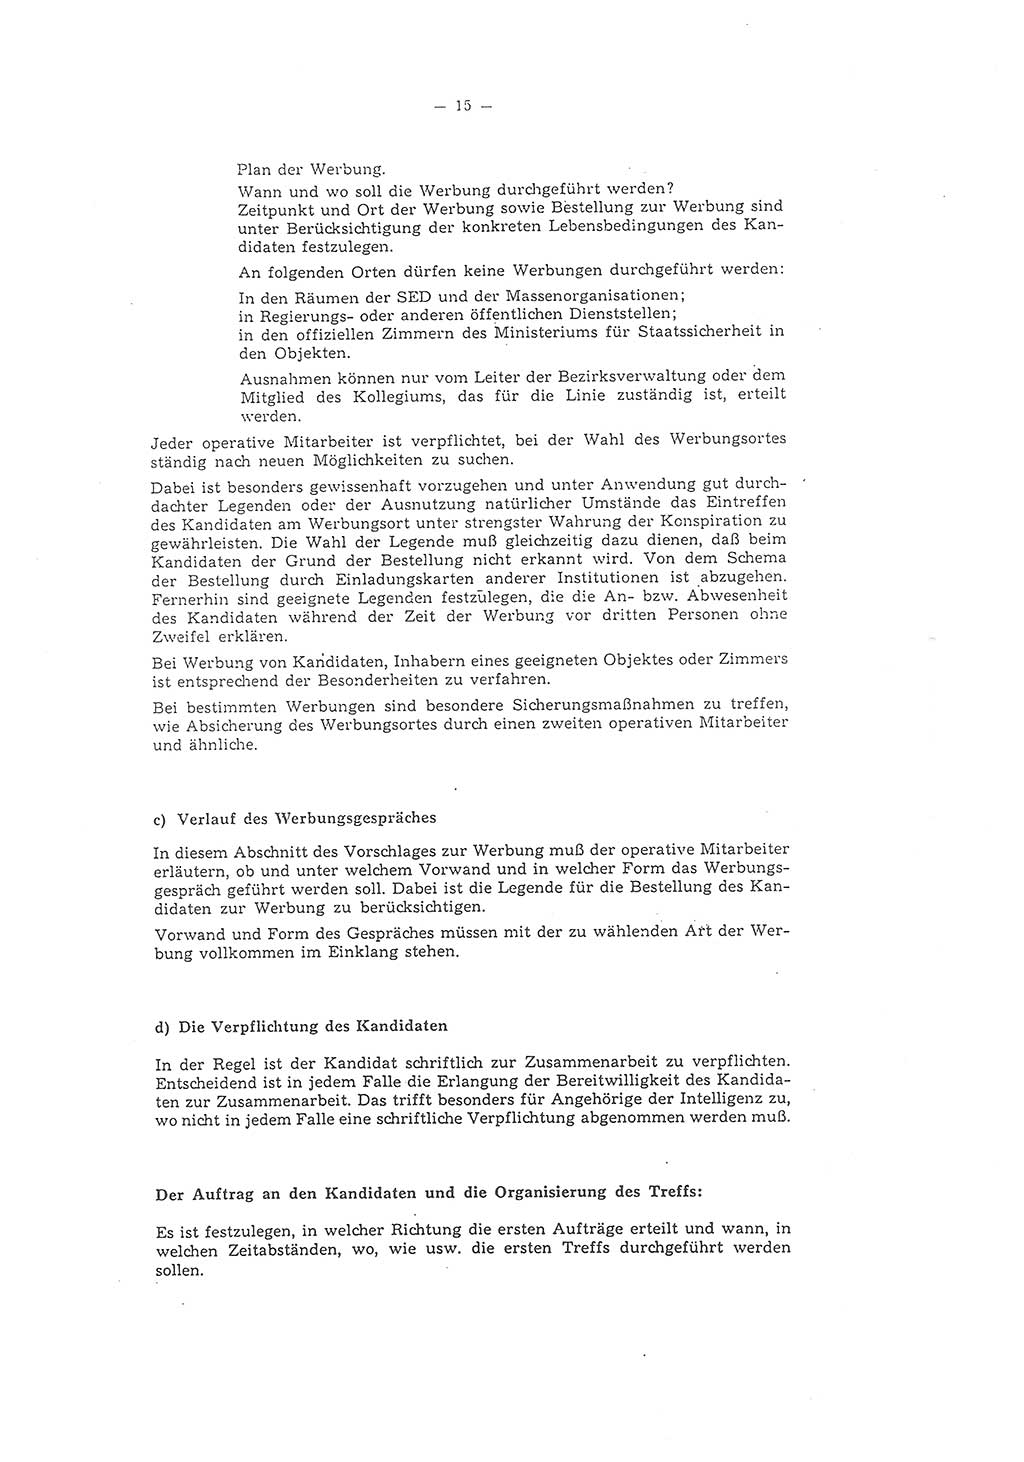 Richtlinie 1/58 für die Arbeit mit inoffiziellen Mitarbeitern im Gebiet der Deutschen Demokratischen Republik (DDR), Ministerium für Staatssicherheit (MfS), Der Minister (Mielke), Geheime Verschlußsache (GVS) 1336/58, Berlin 1958, Seite 15 (RL 1/58 DDR MfS Min. GVS 1336/58 1958, S. 15)